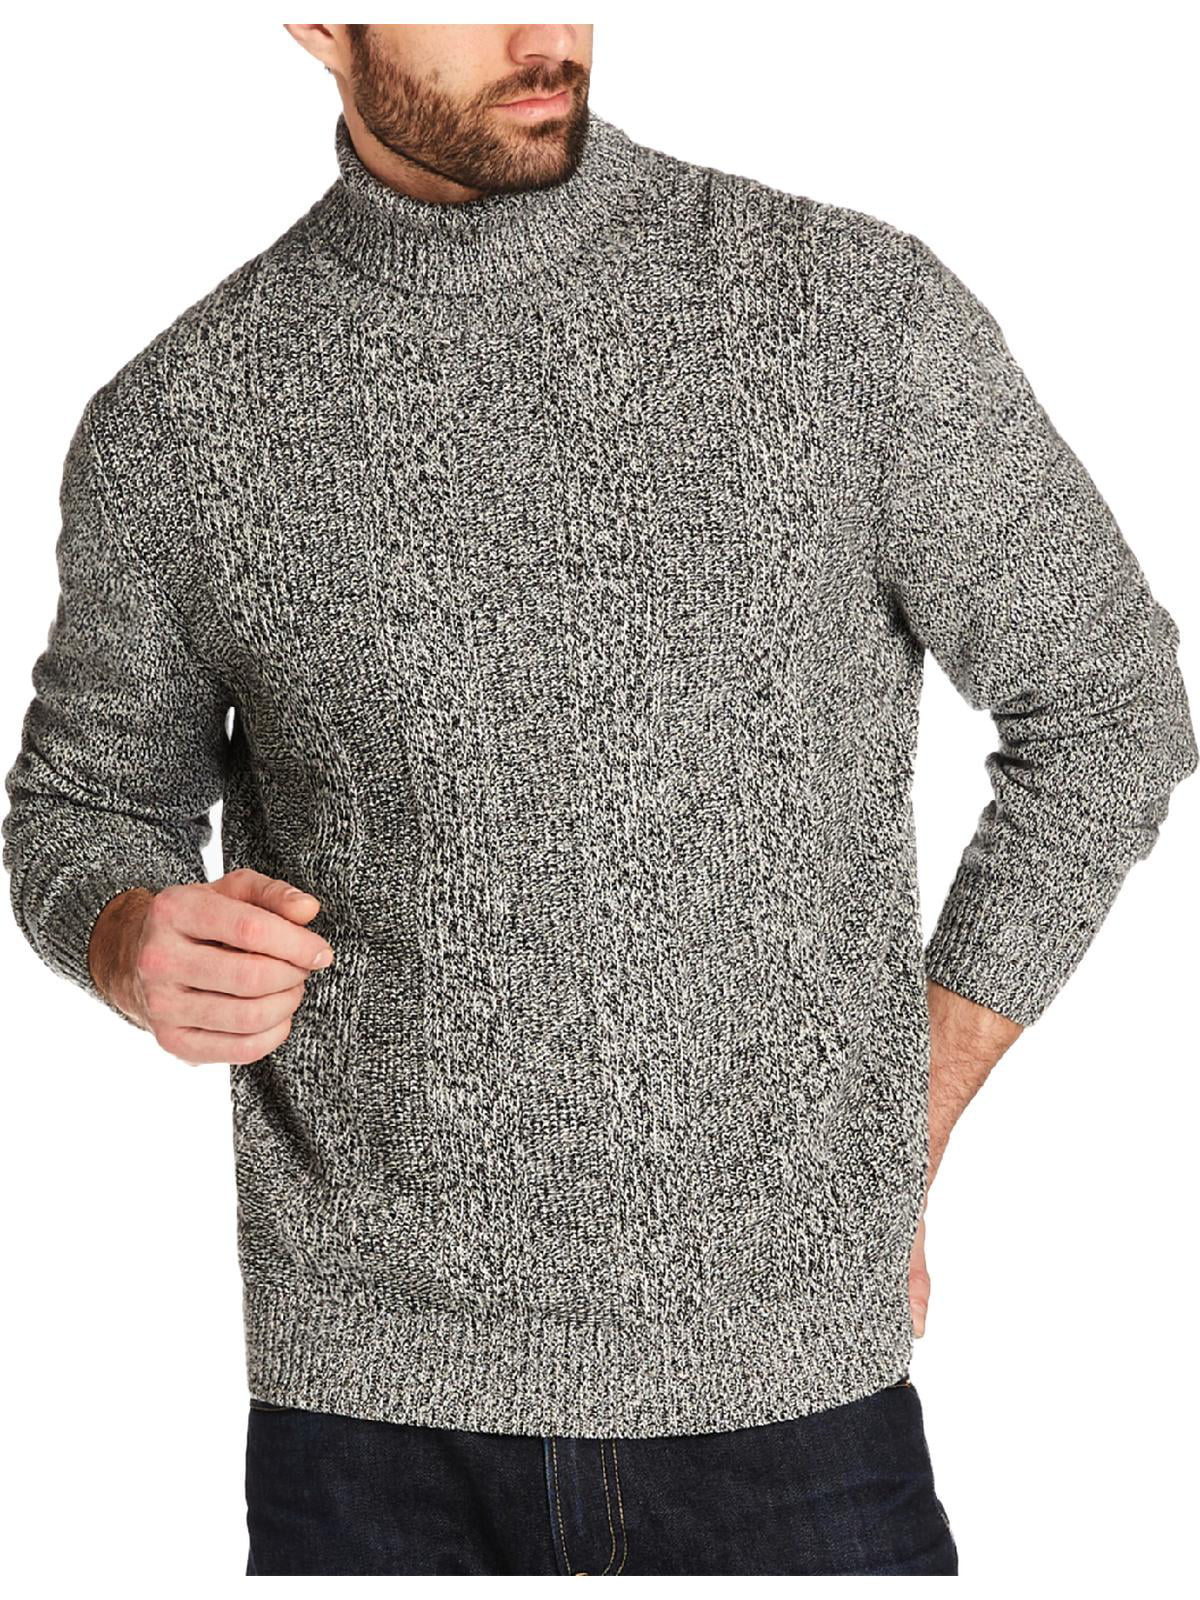 Weatherproof - Weatherproof Mens Ribbed Long Sleeve Turtleneck Sweater ...